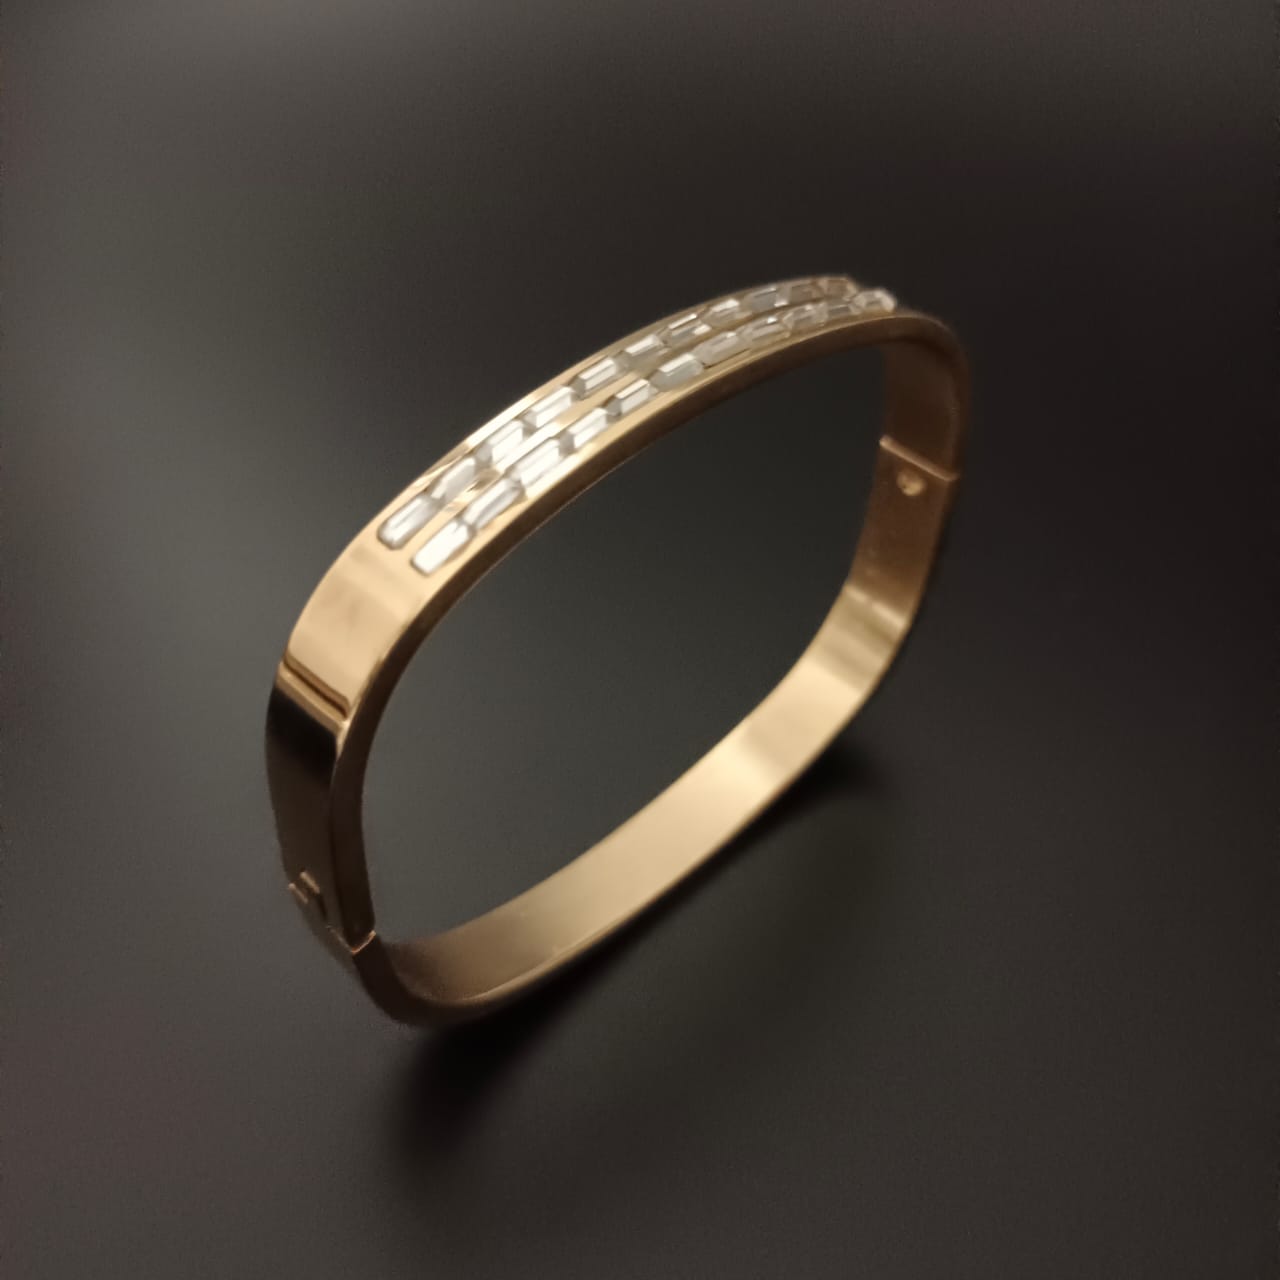 New Golden Rectangular Style Design Diamond Bracelet For Women and Girl